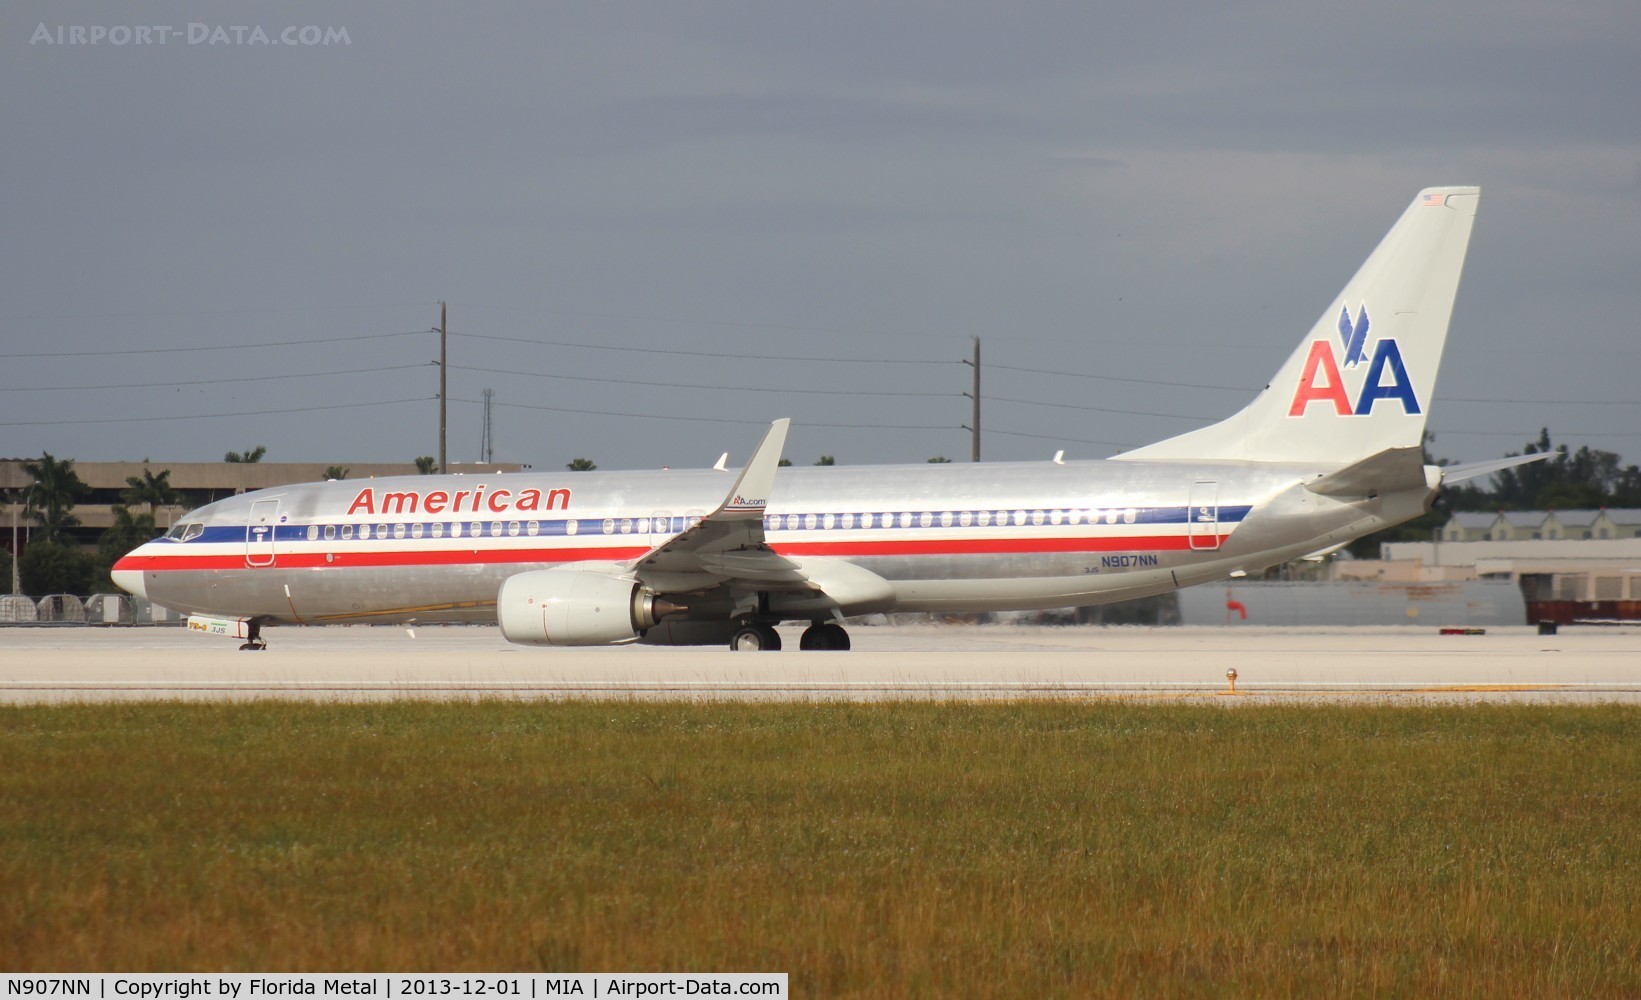 N907NN, 2013 Boeing 737-823 C/N 31158, American 737-800